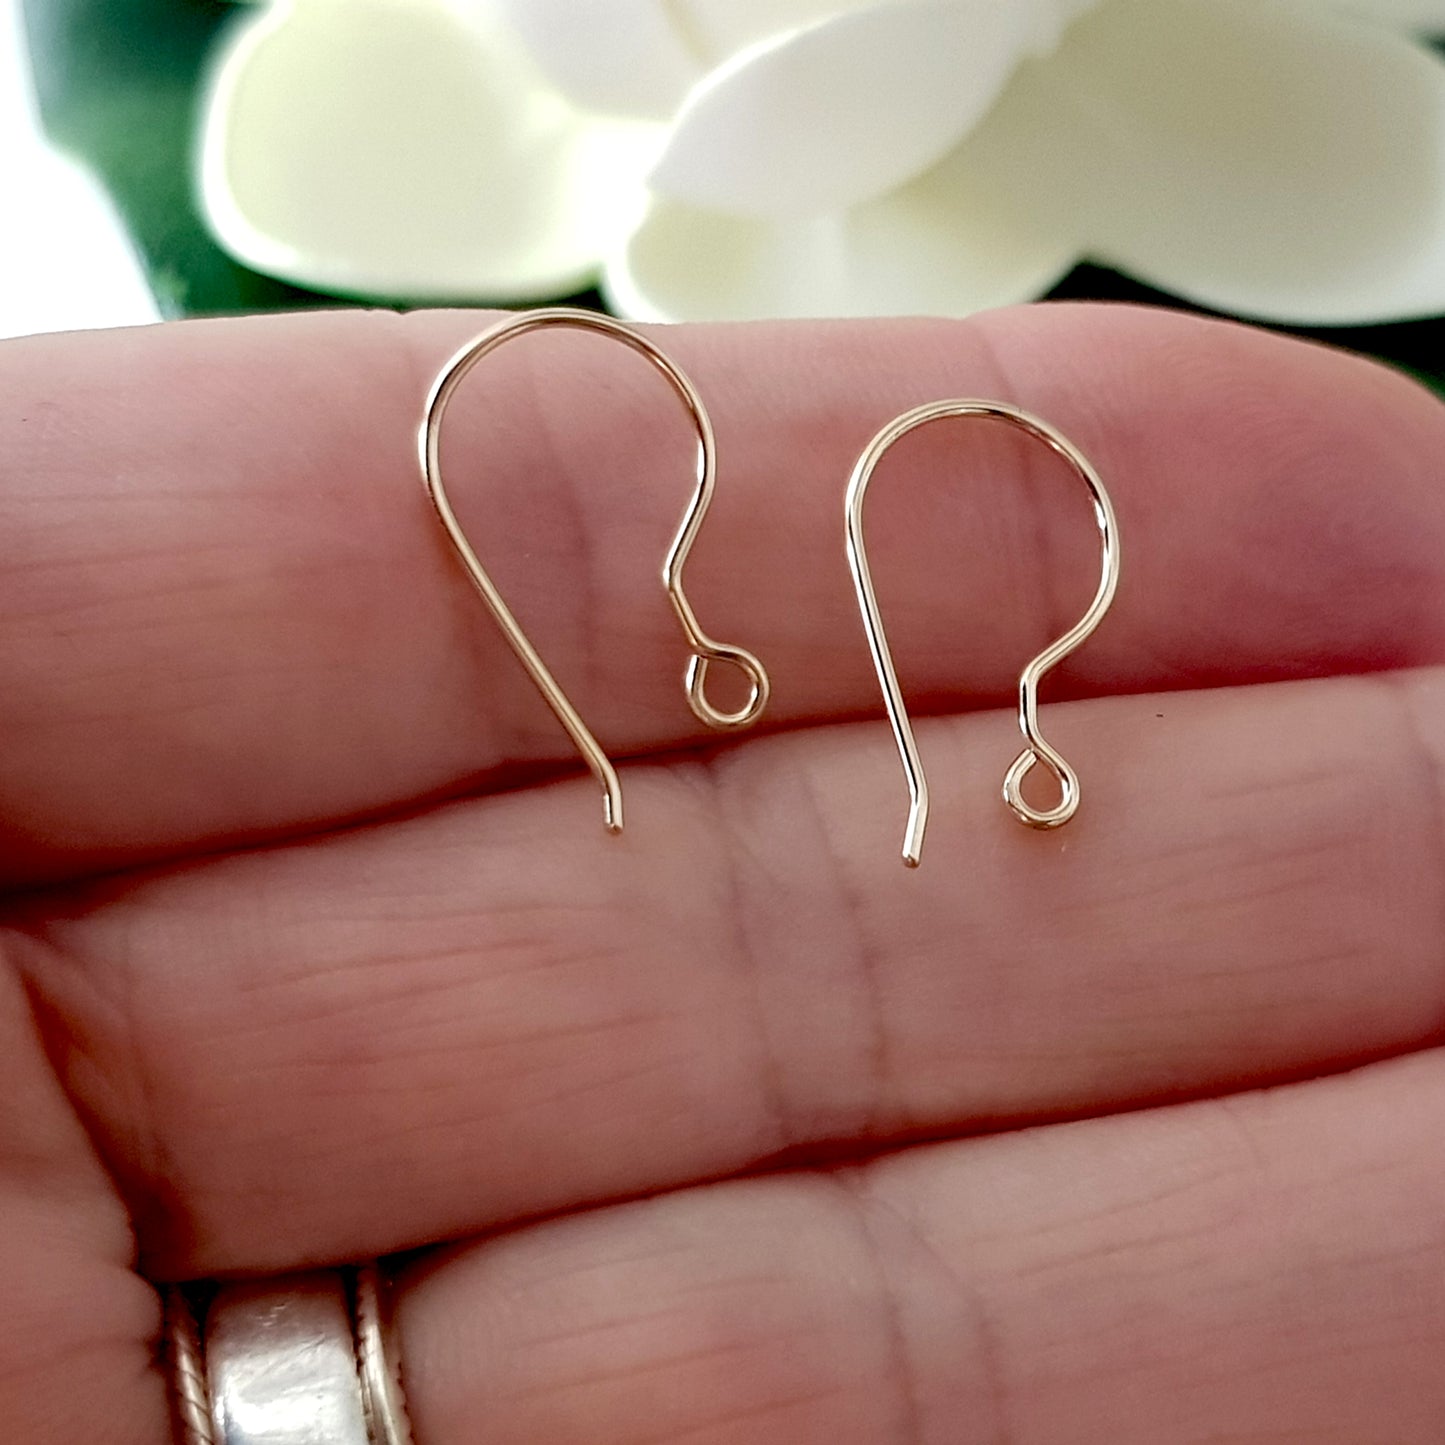 Shepherds Hook [1 Pair] Handmade Earring Wires Gold-Filled 14k | GF-001EH | Jewellery Making Supply